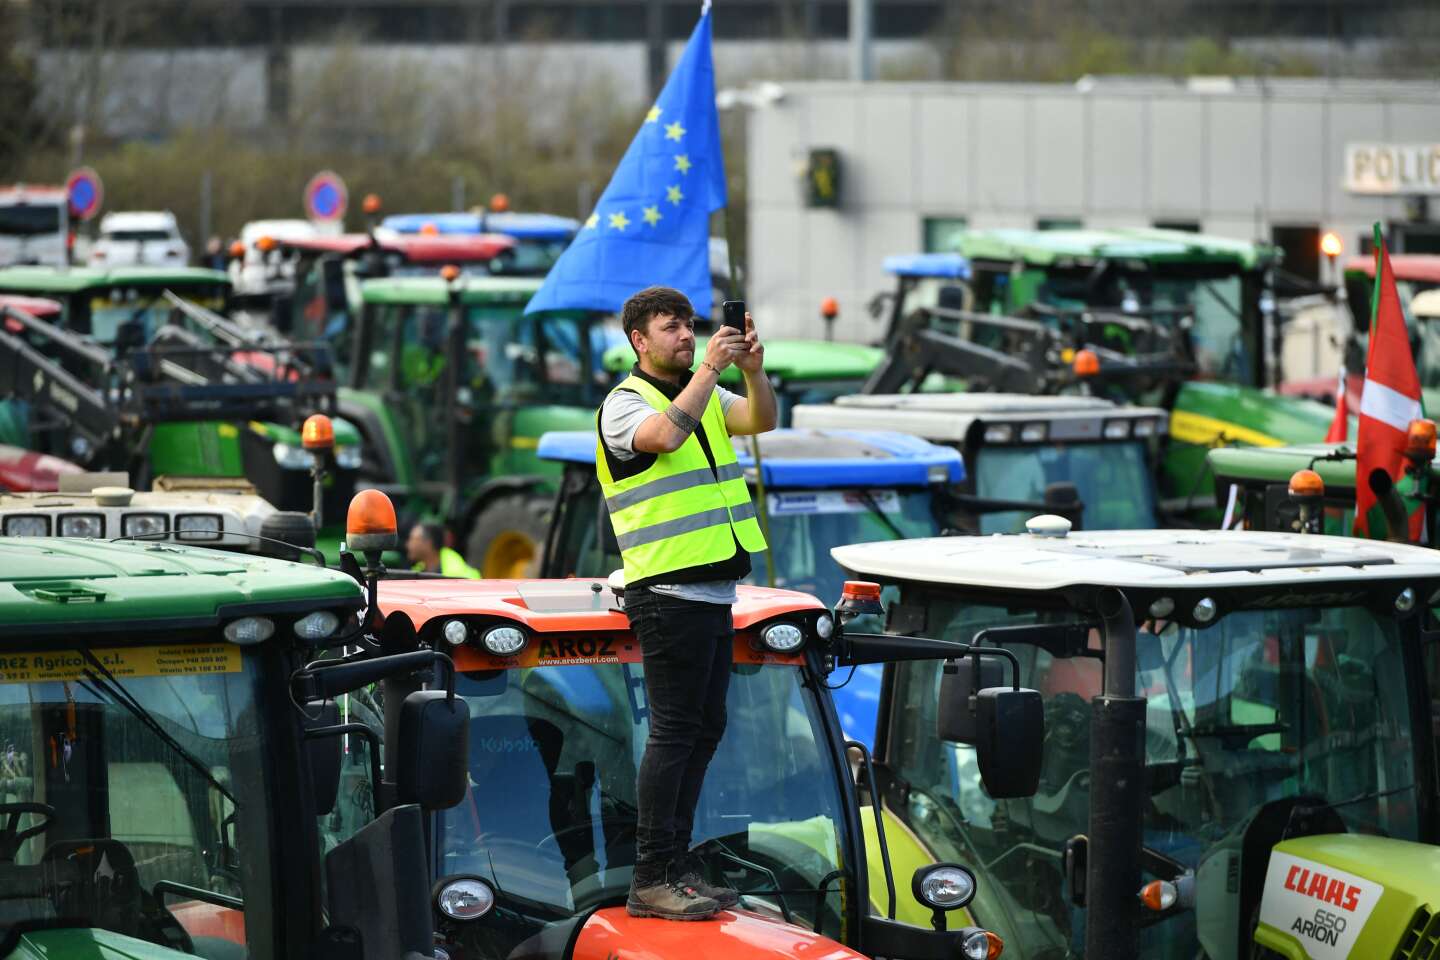 CETA : pourquoi les éleveurs bovins sont résolument opposés au traité de libre-échange entre l’Europe et le Canada